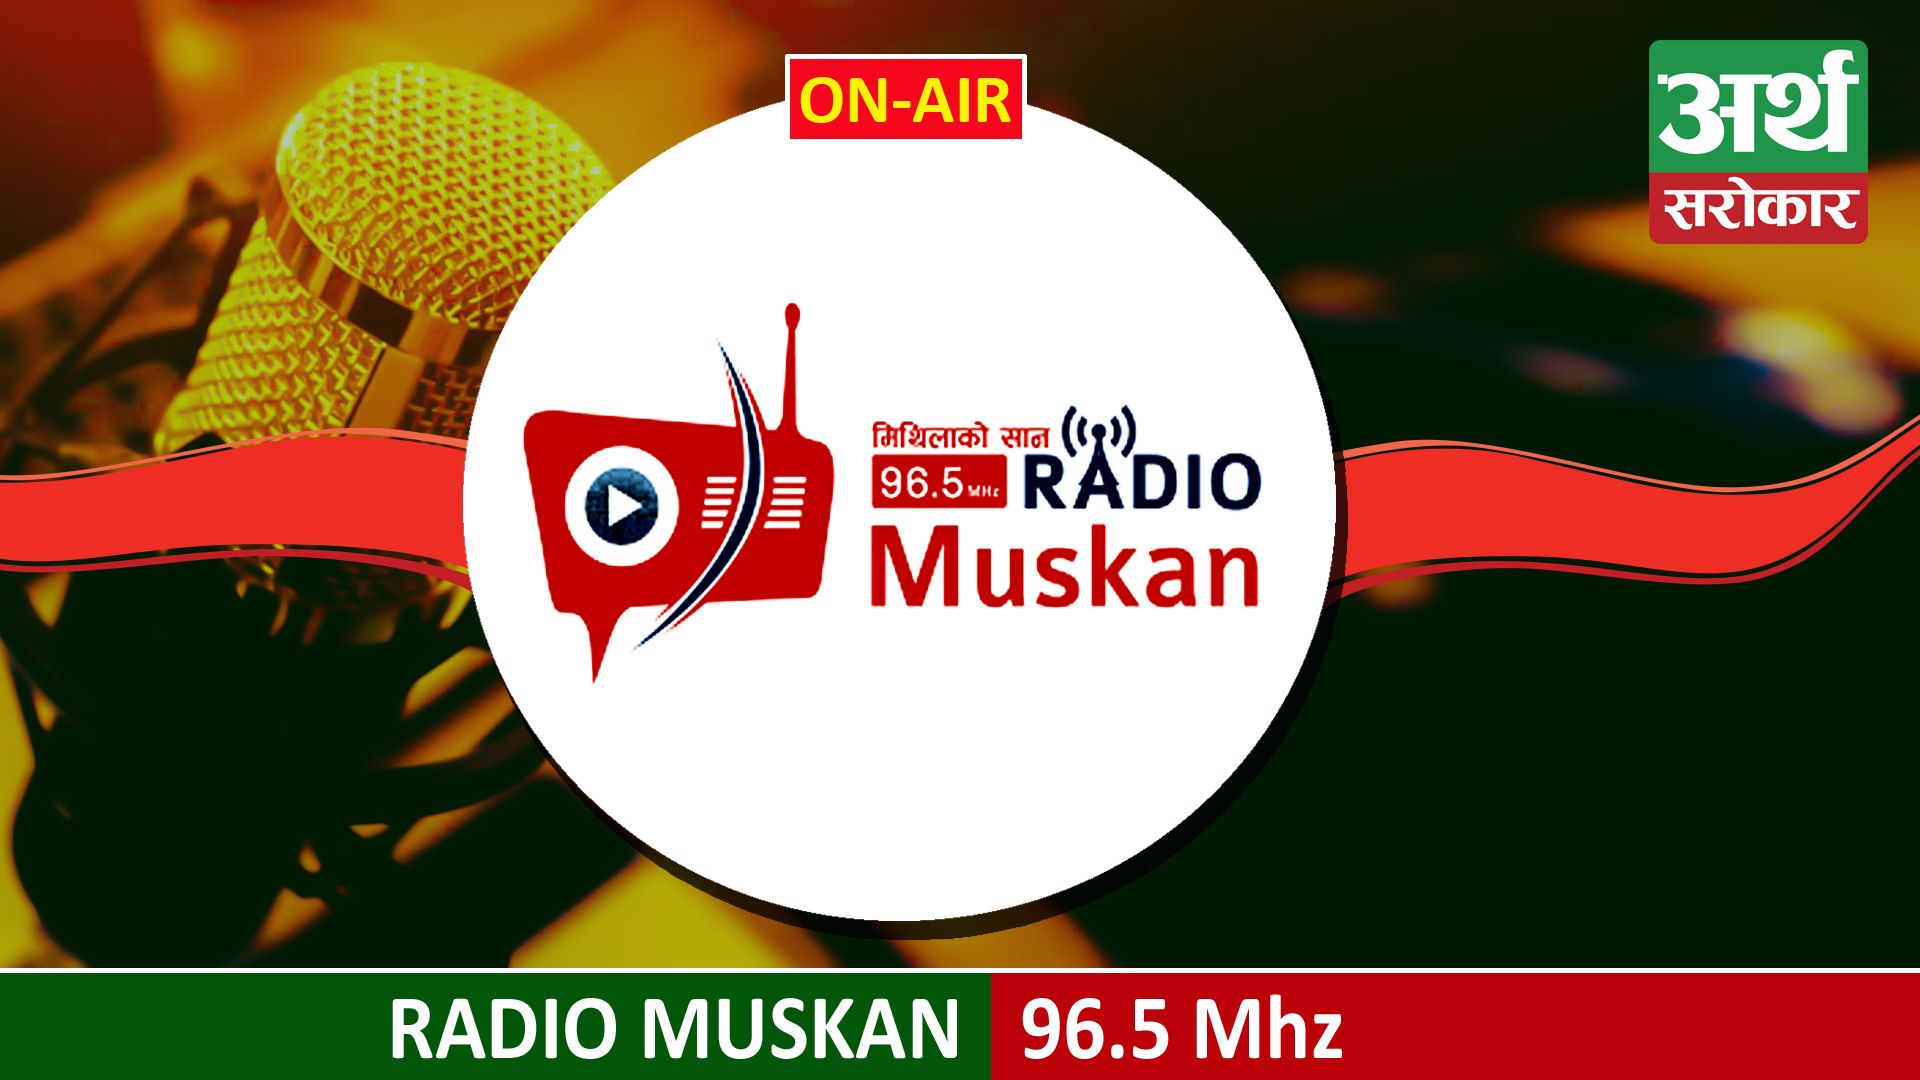 Radio Muskan 96.5 mhz